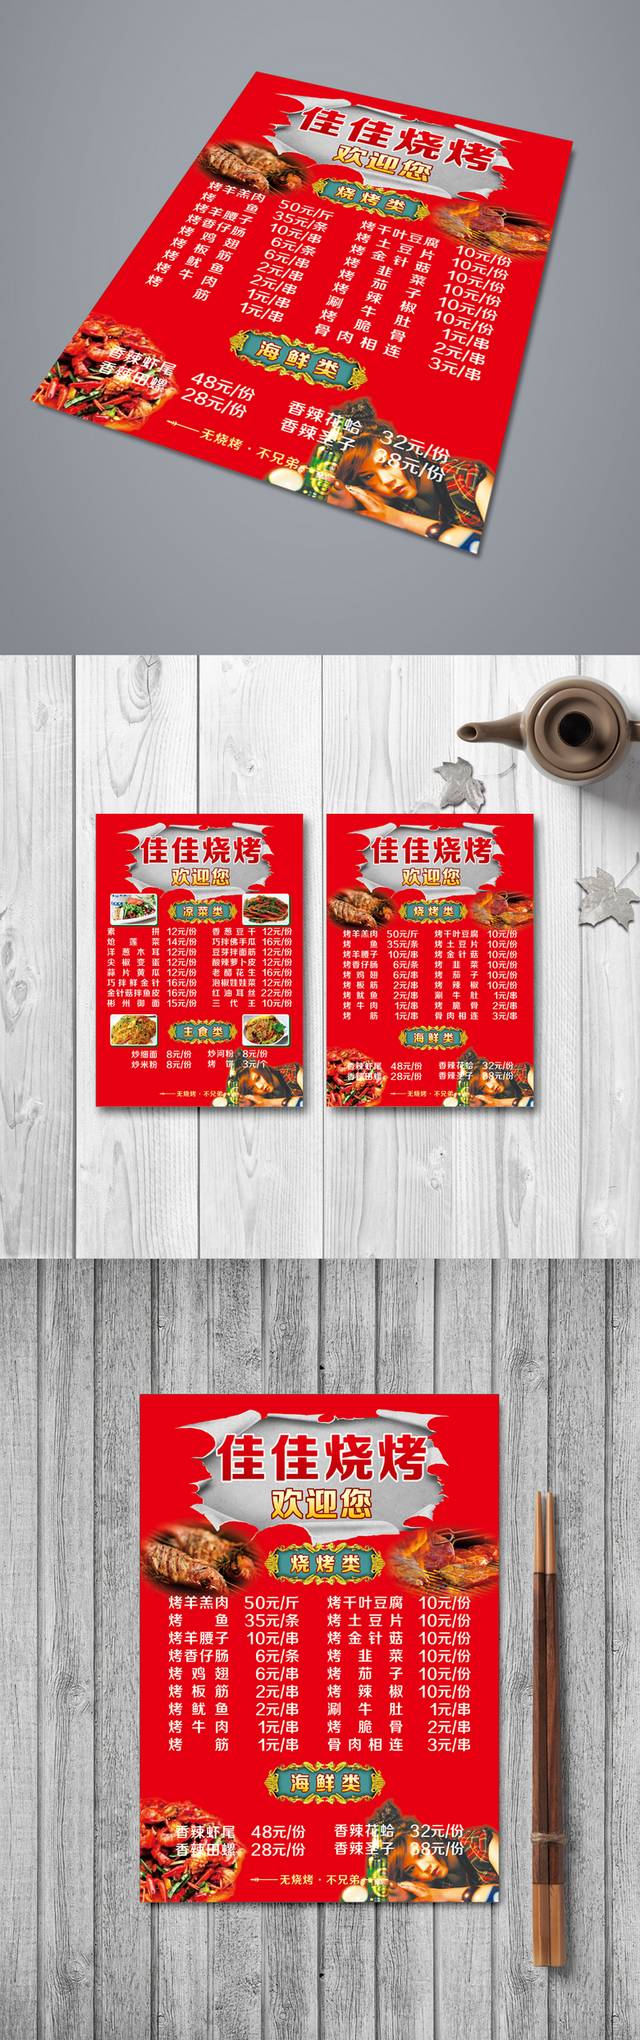 红色高清烧烤店菜单模板设计